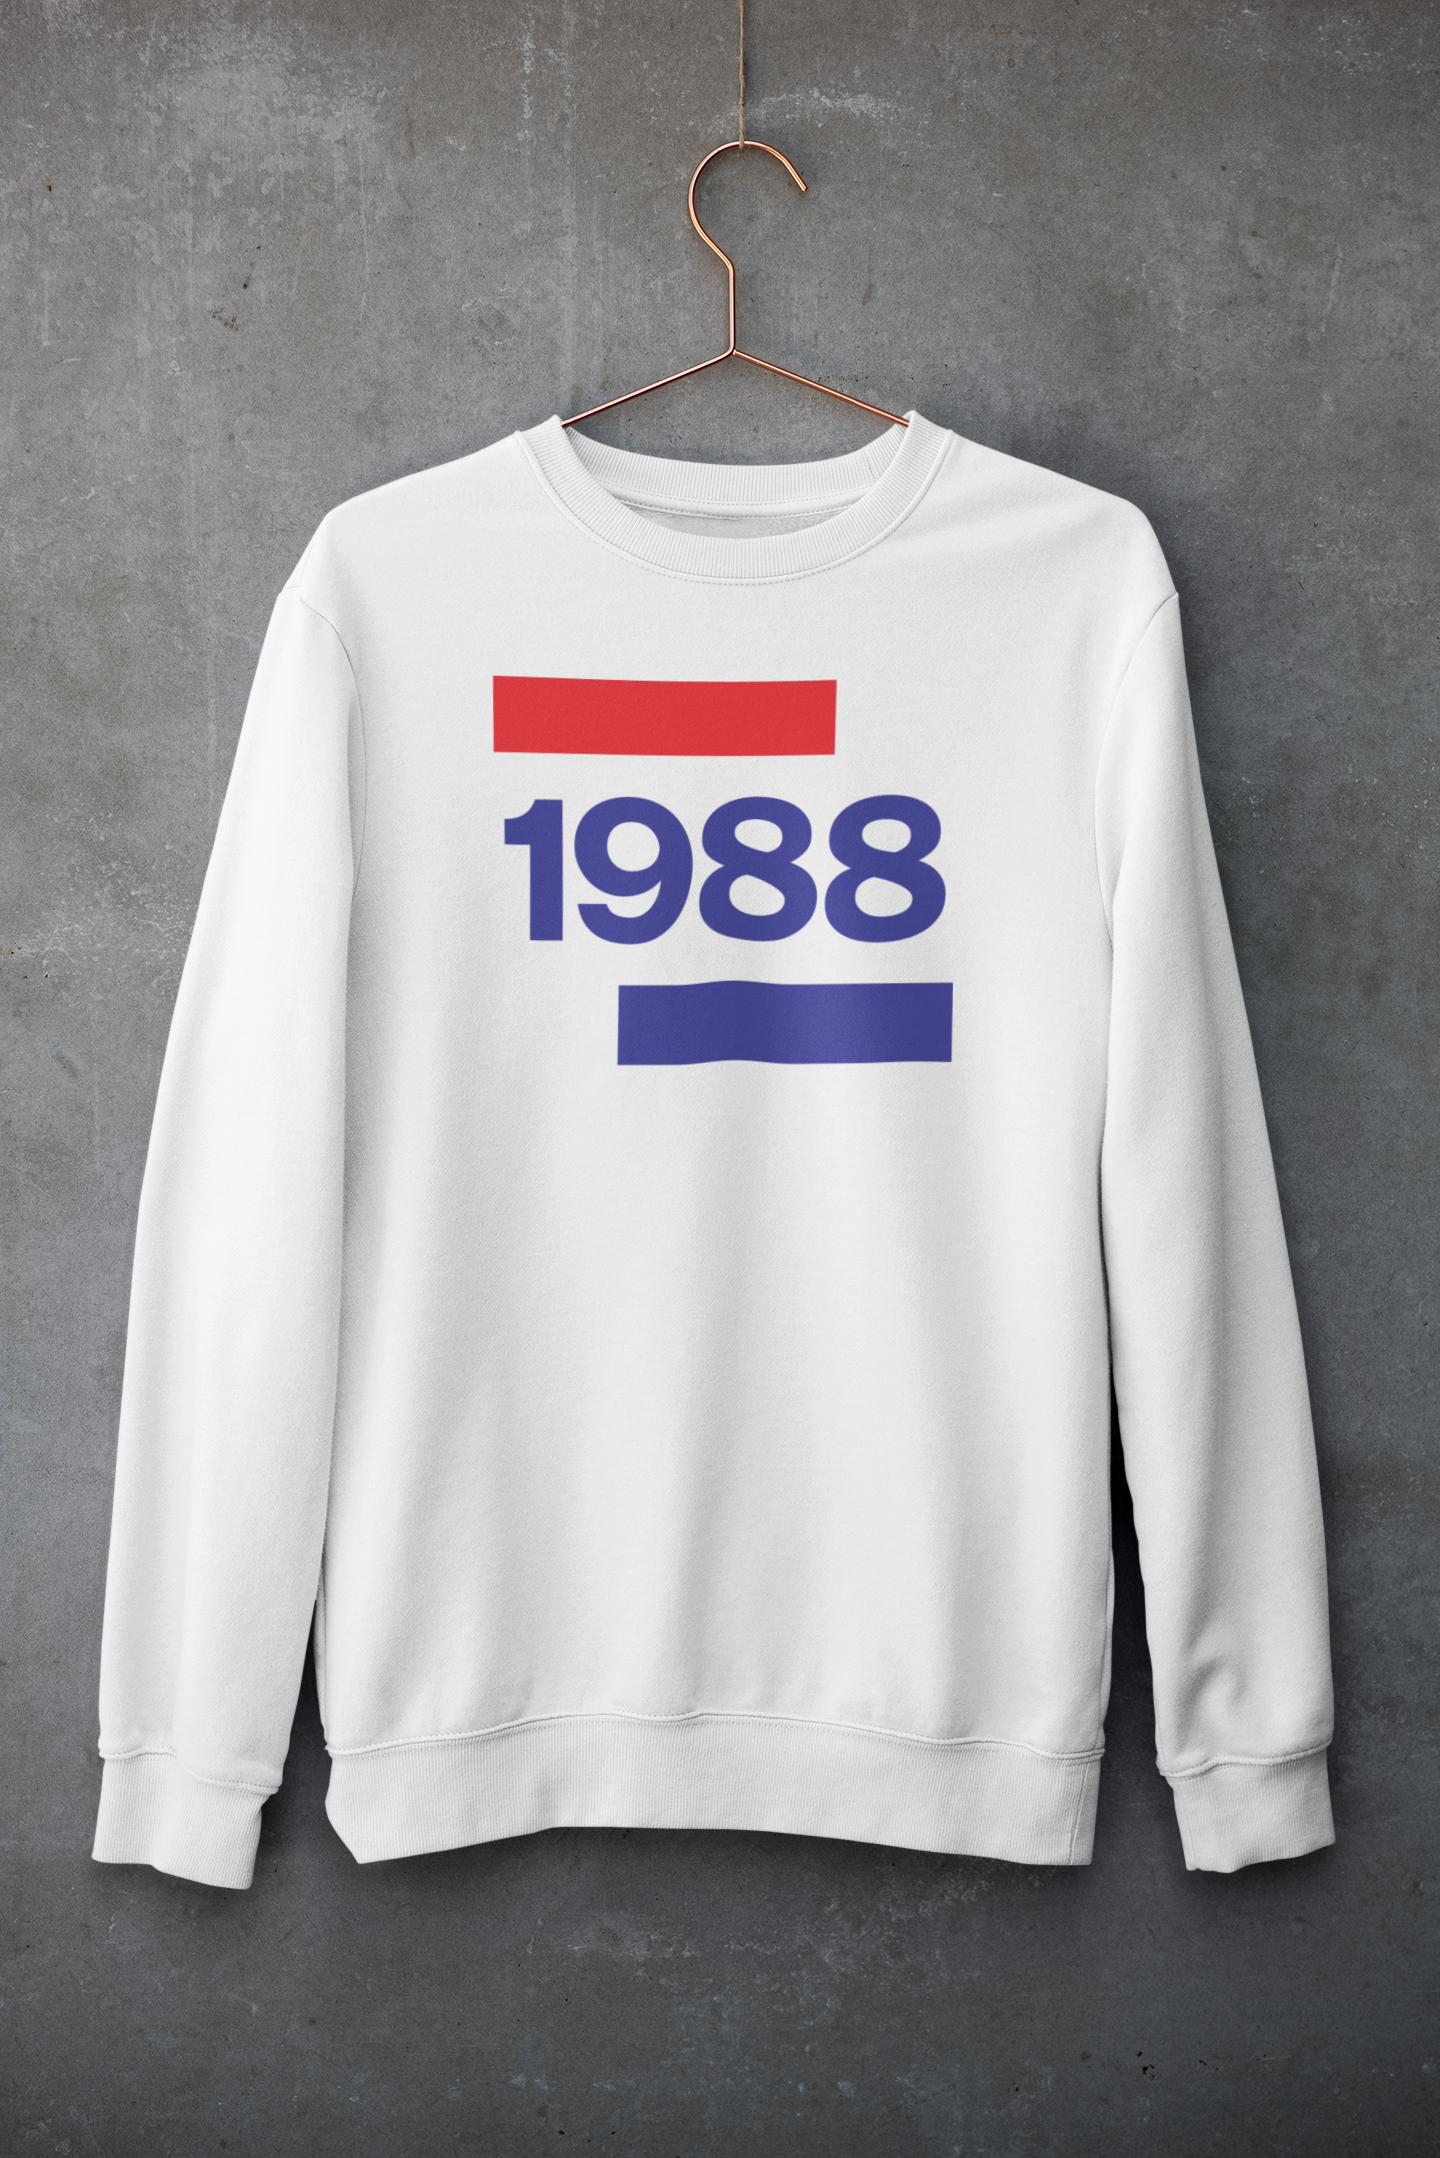 1988 'Going Dutch' UNISEX Sweater | TalkPeng